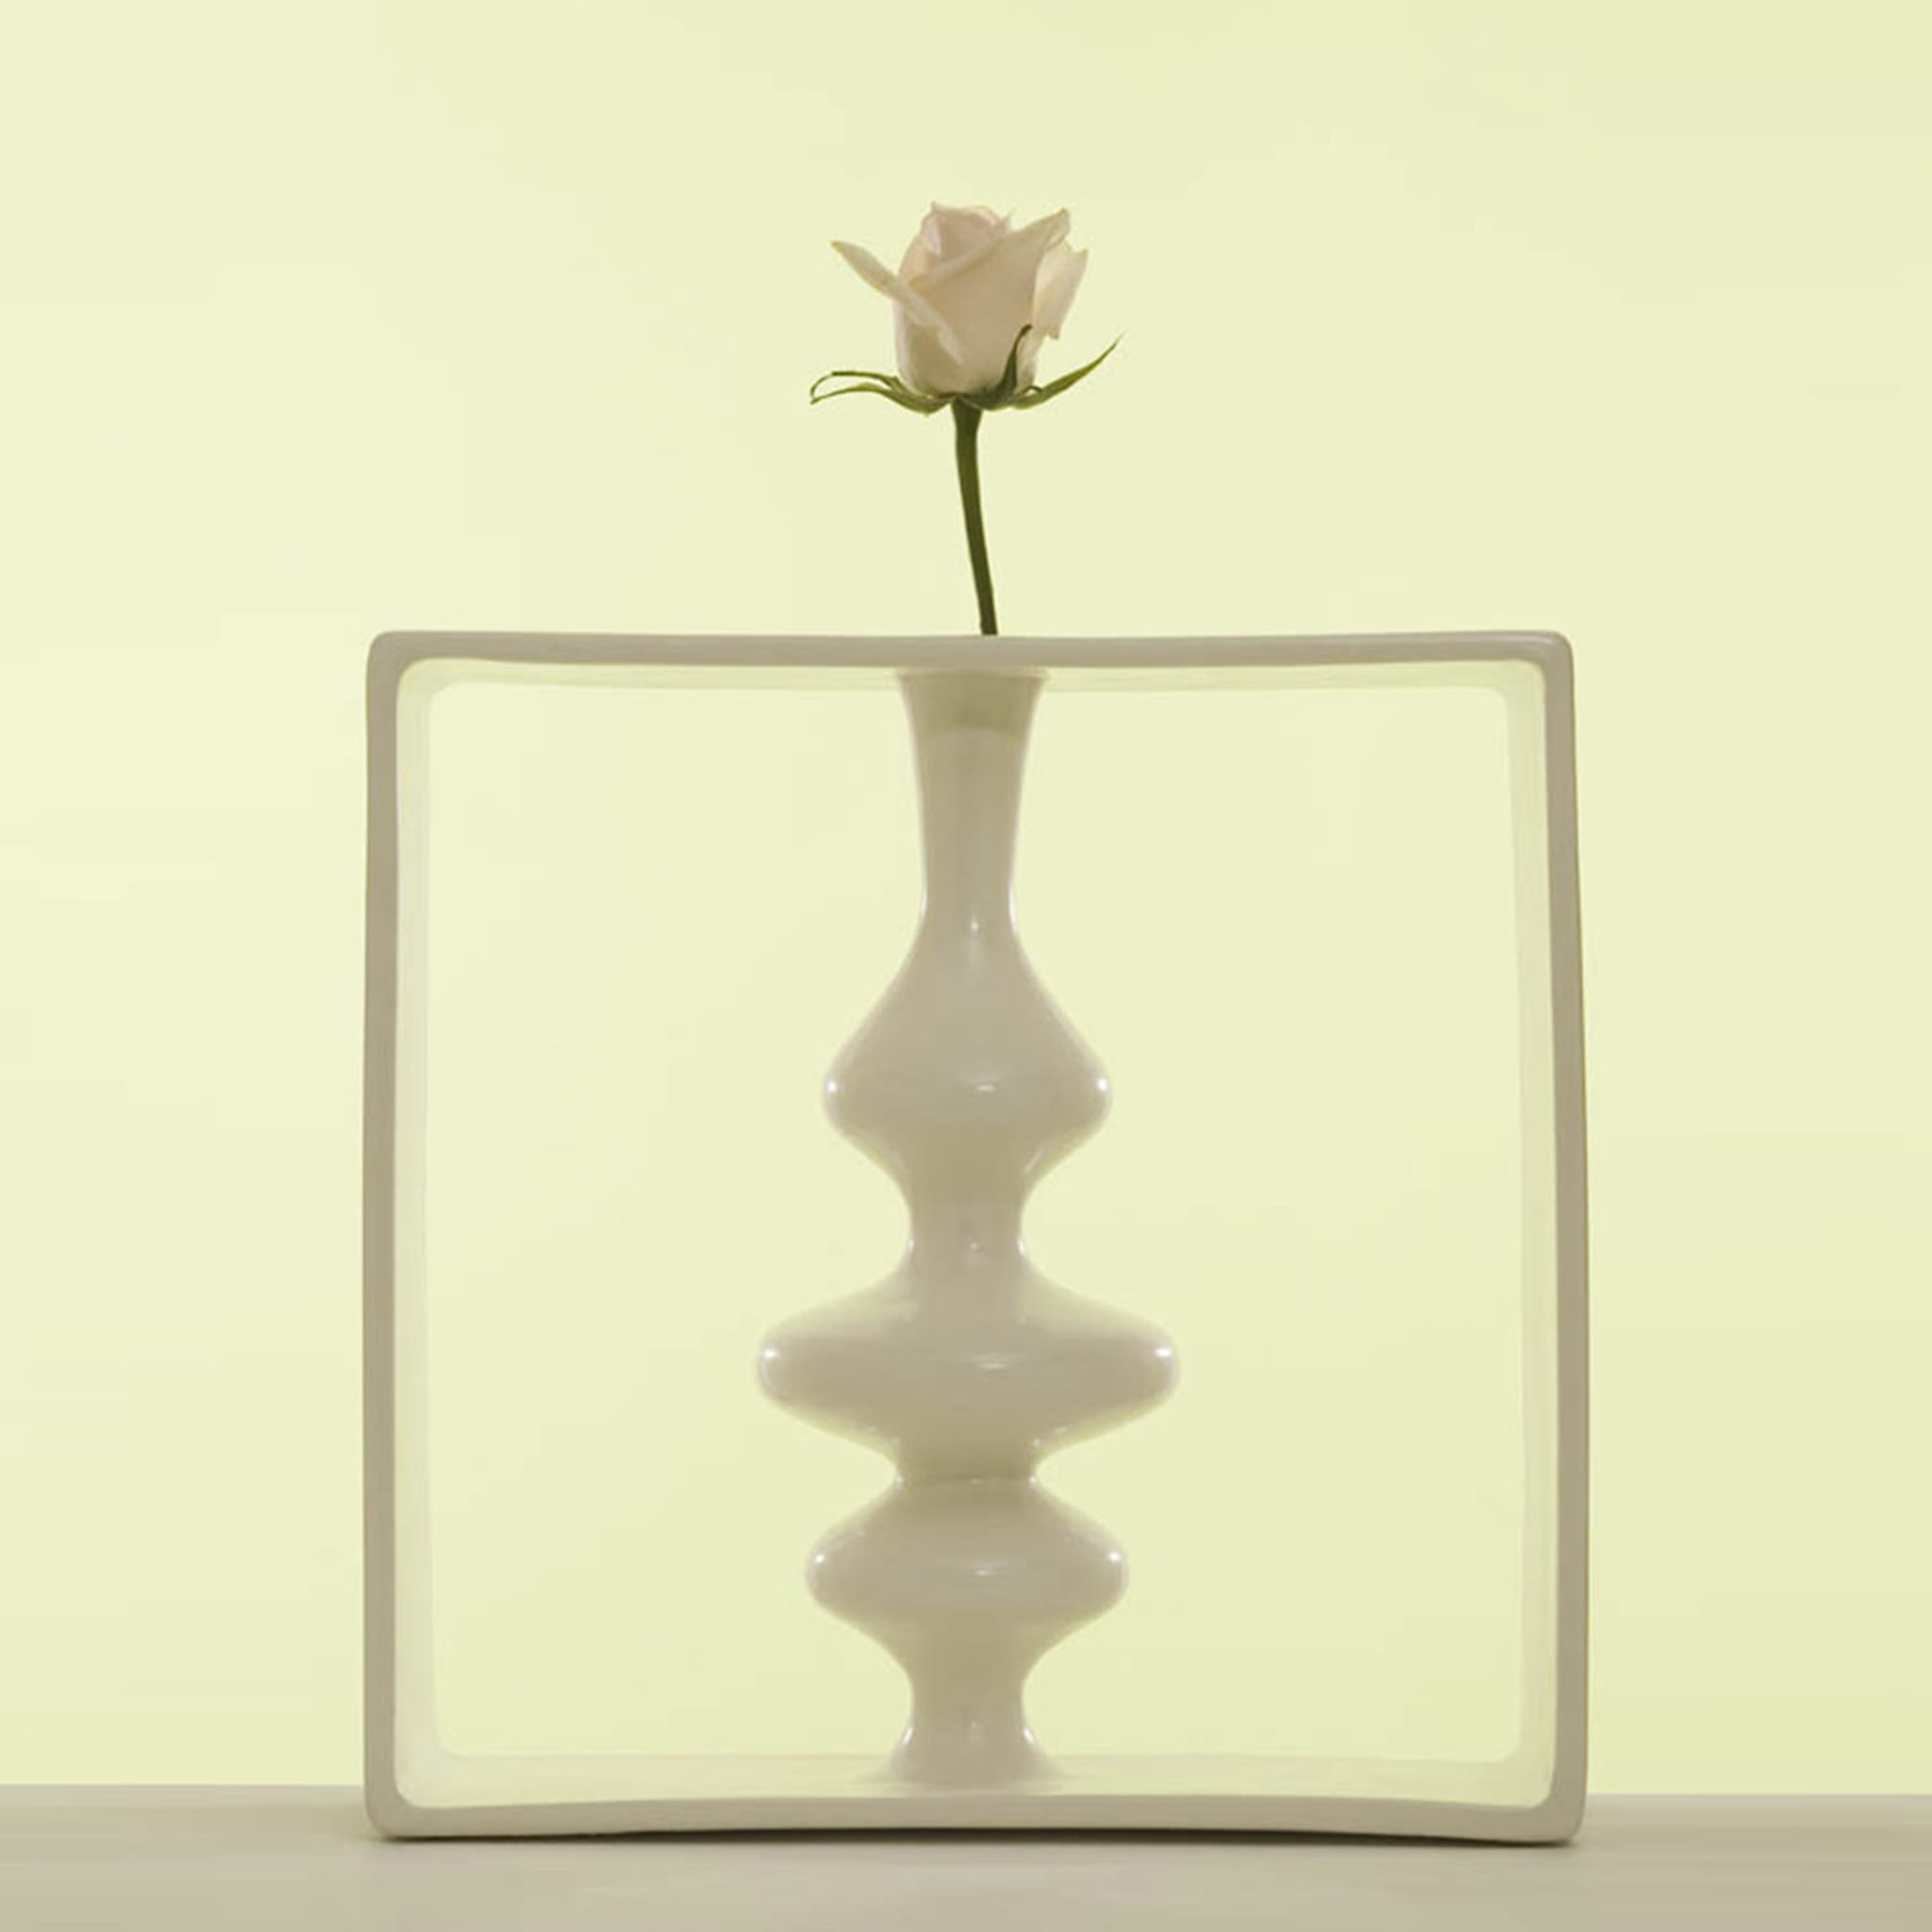 Portali 6 Vase by Andrea Branzi - Alternative view 1